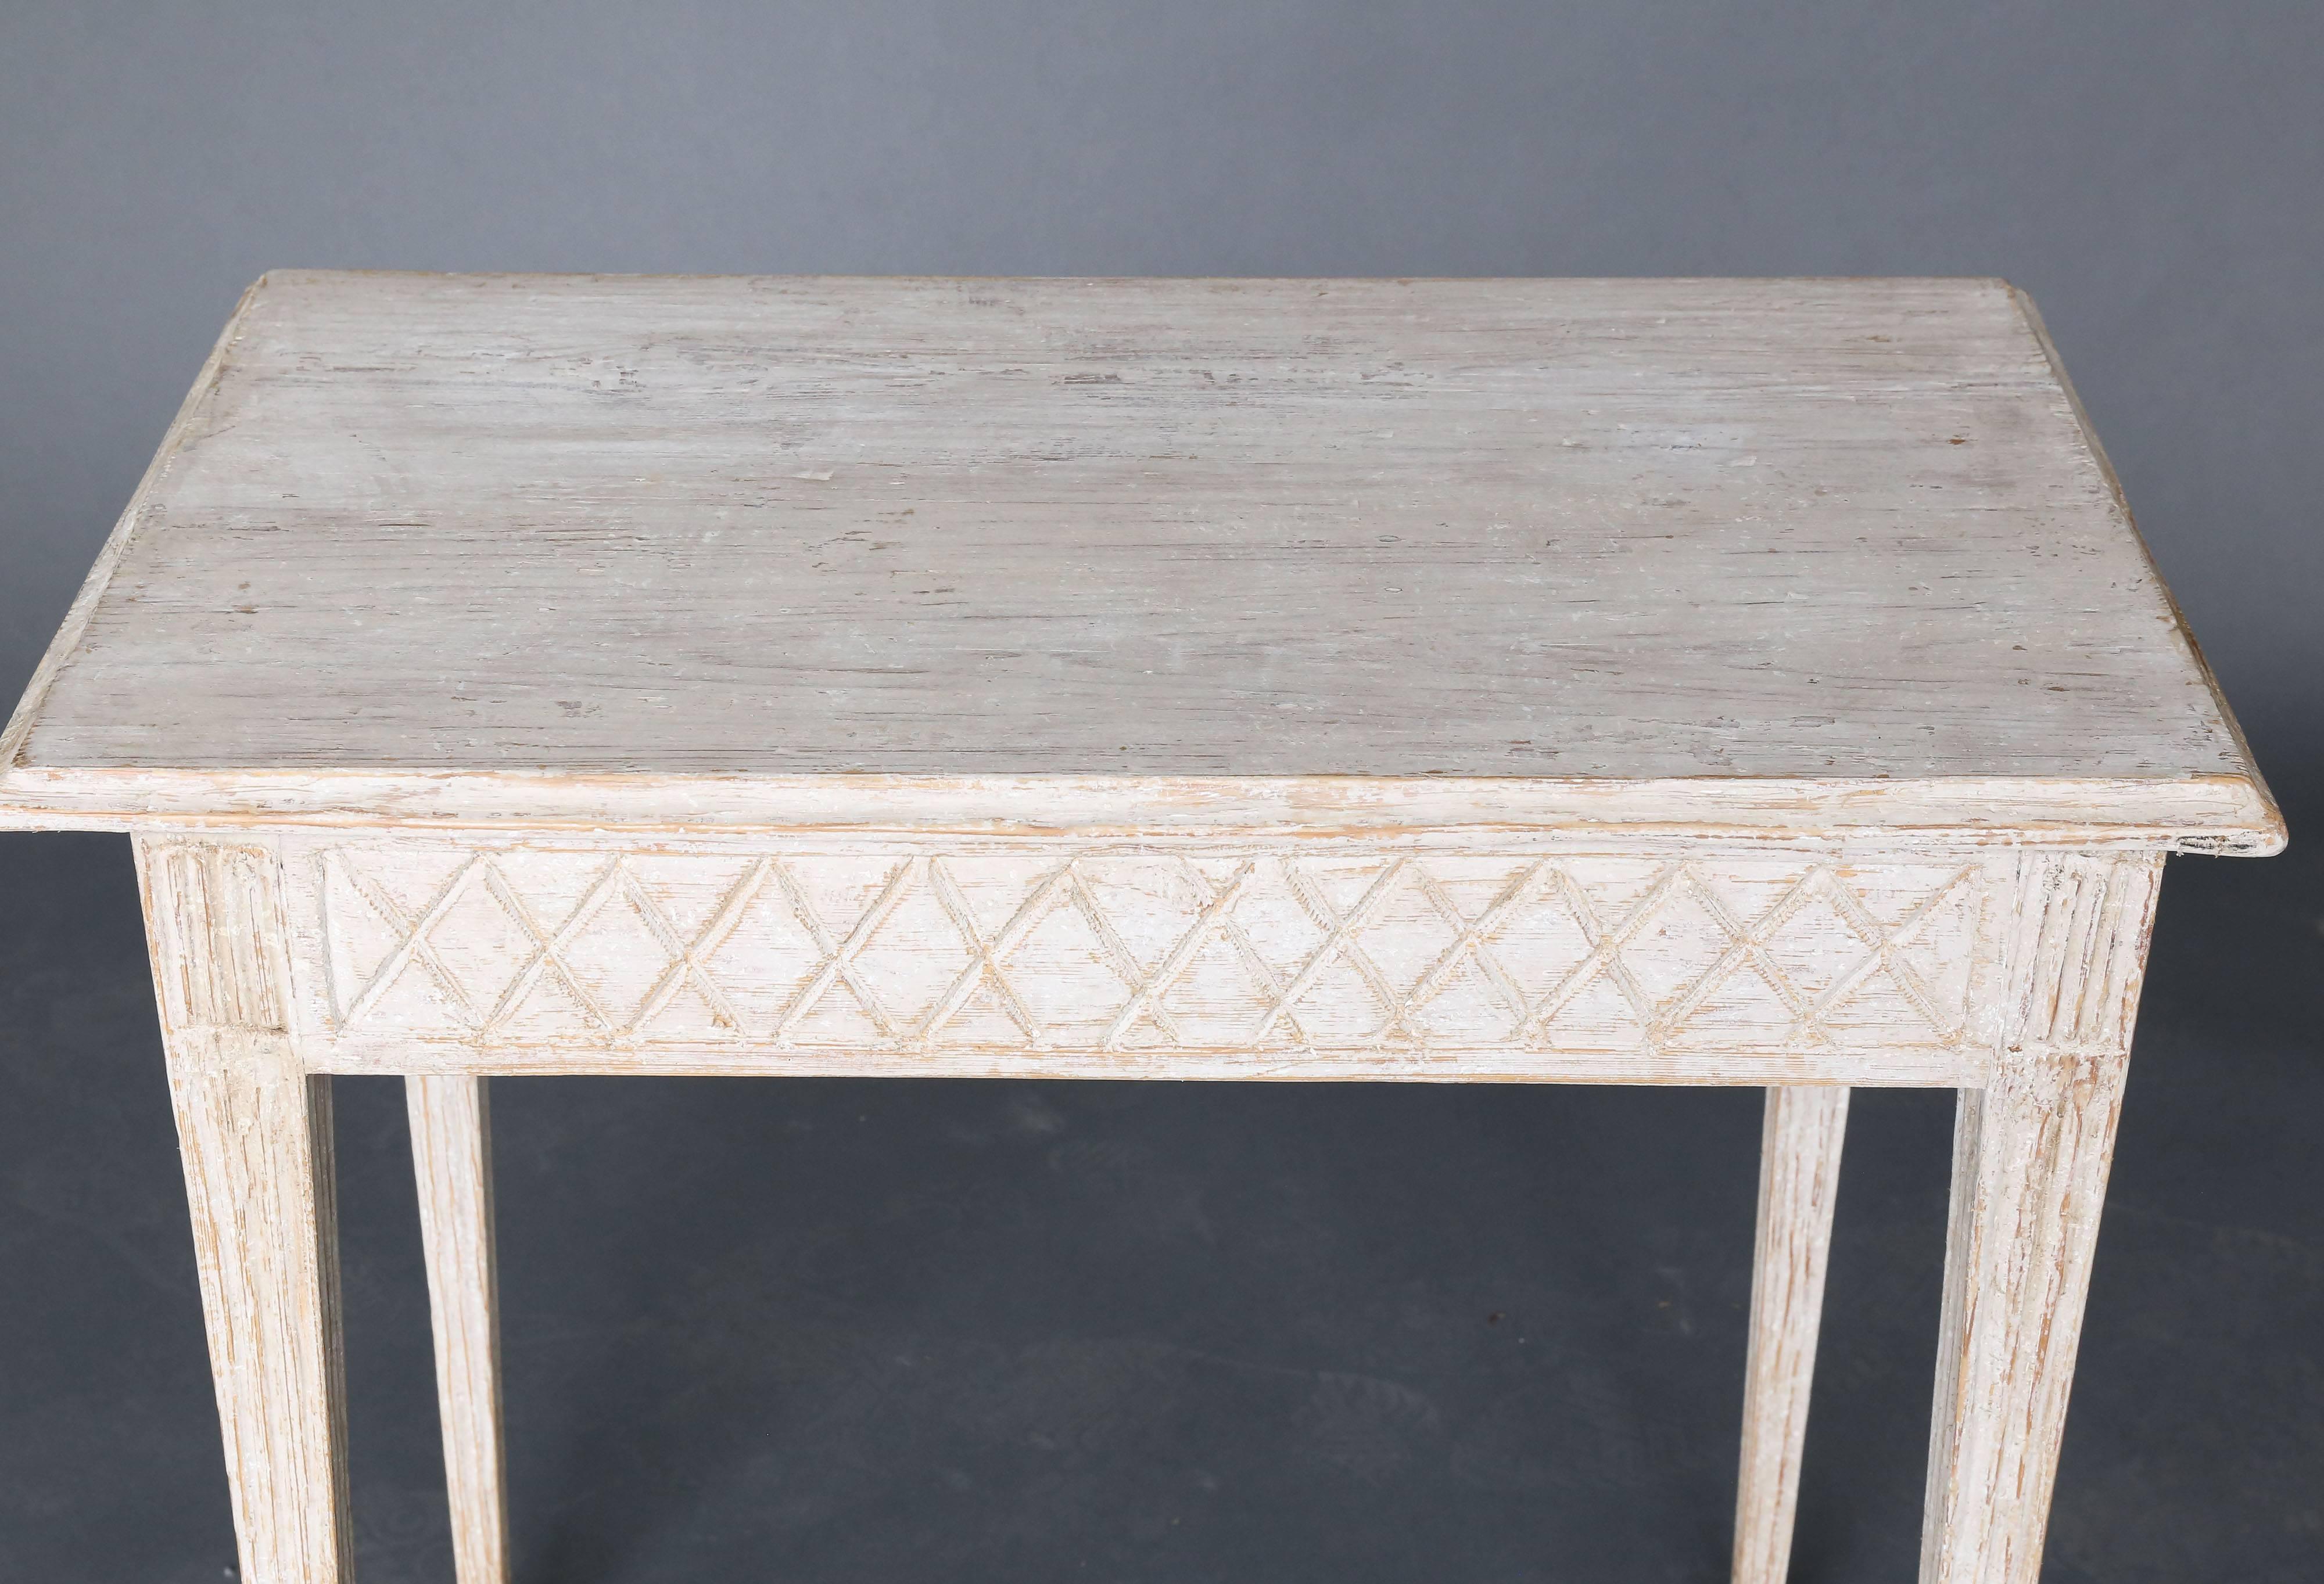 schmaler schwedischer Tisch aus dem 19. Jahrhundert, bemalt, mit kannelierten Beinen und kreuzförmigem Muster.